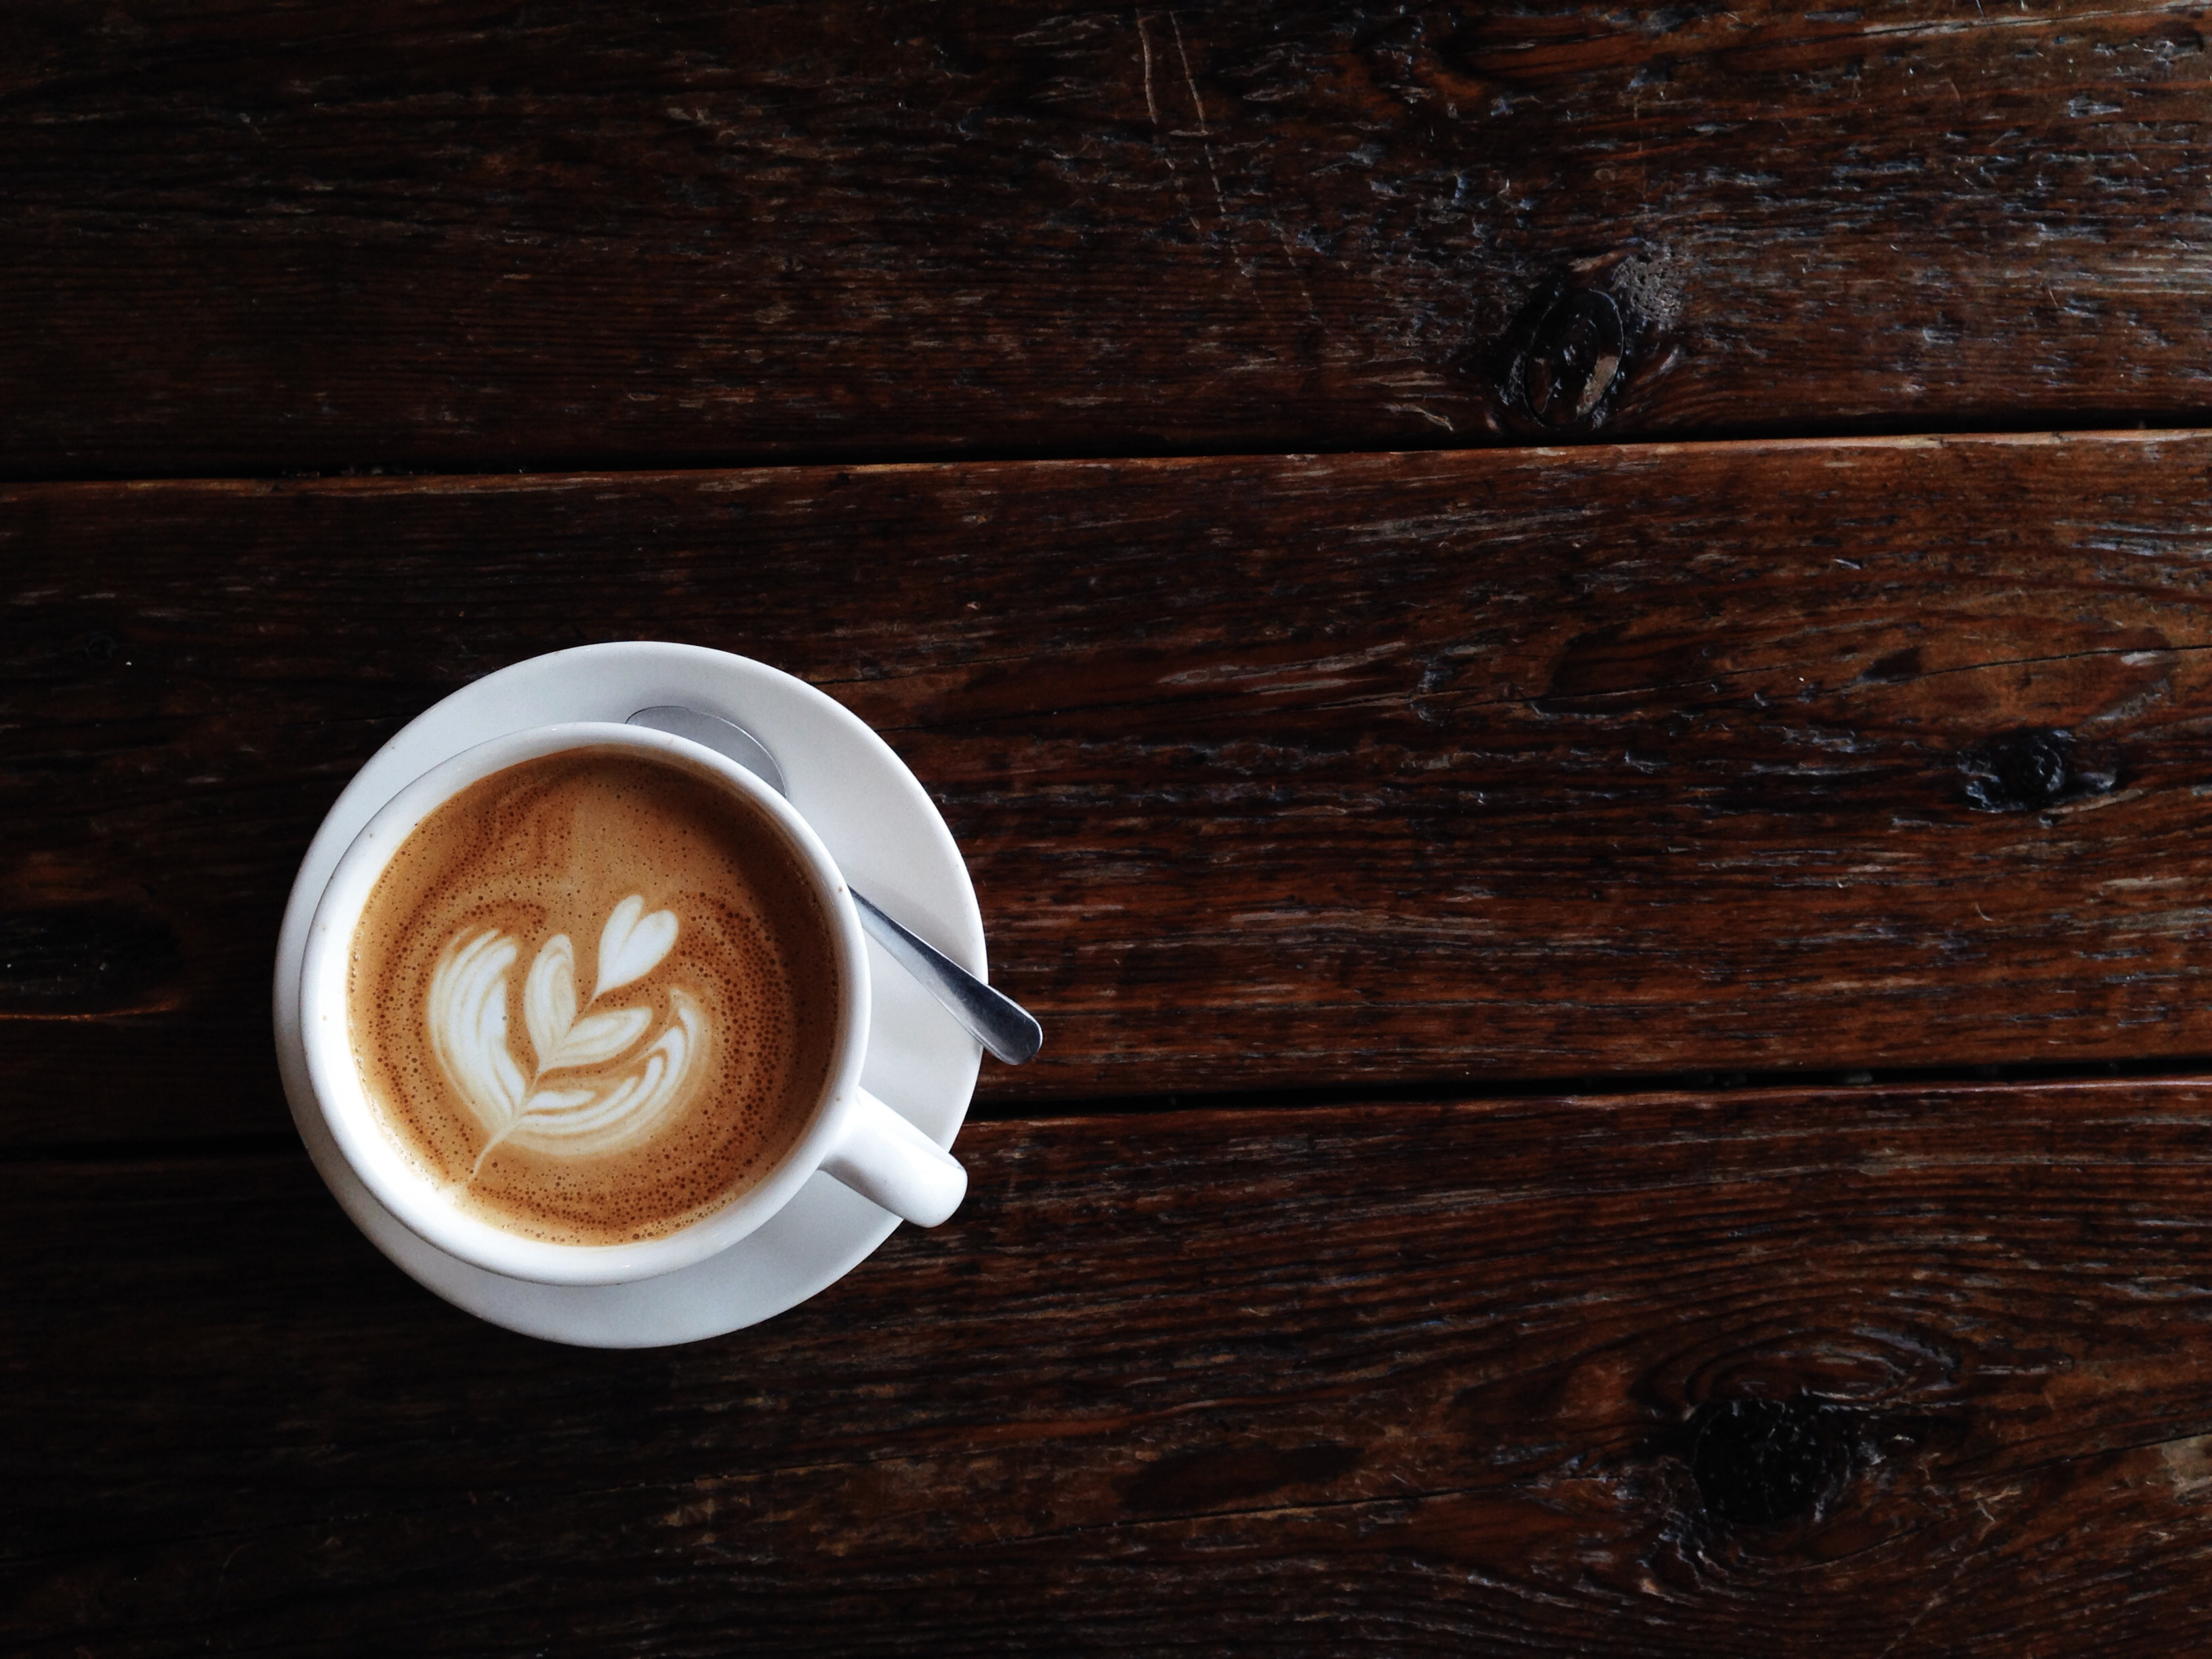 Art of producing latte